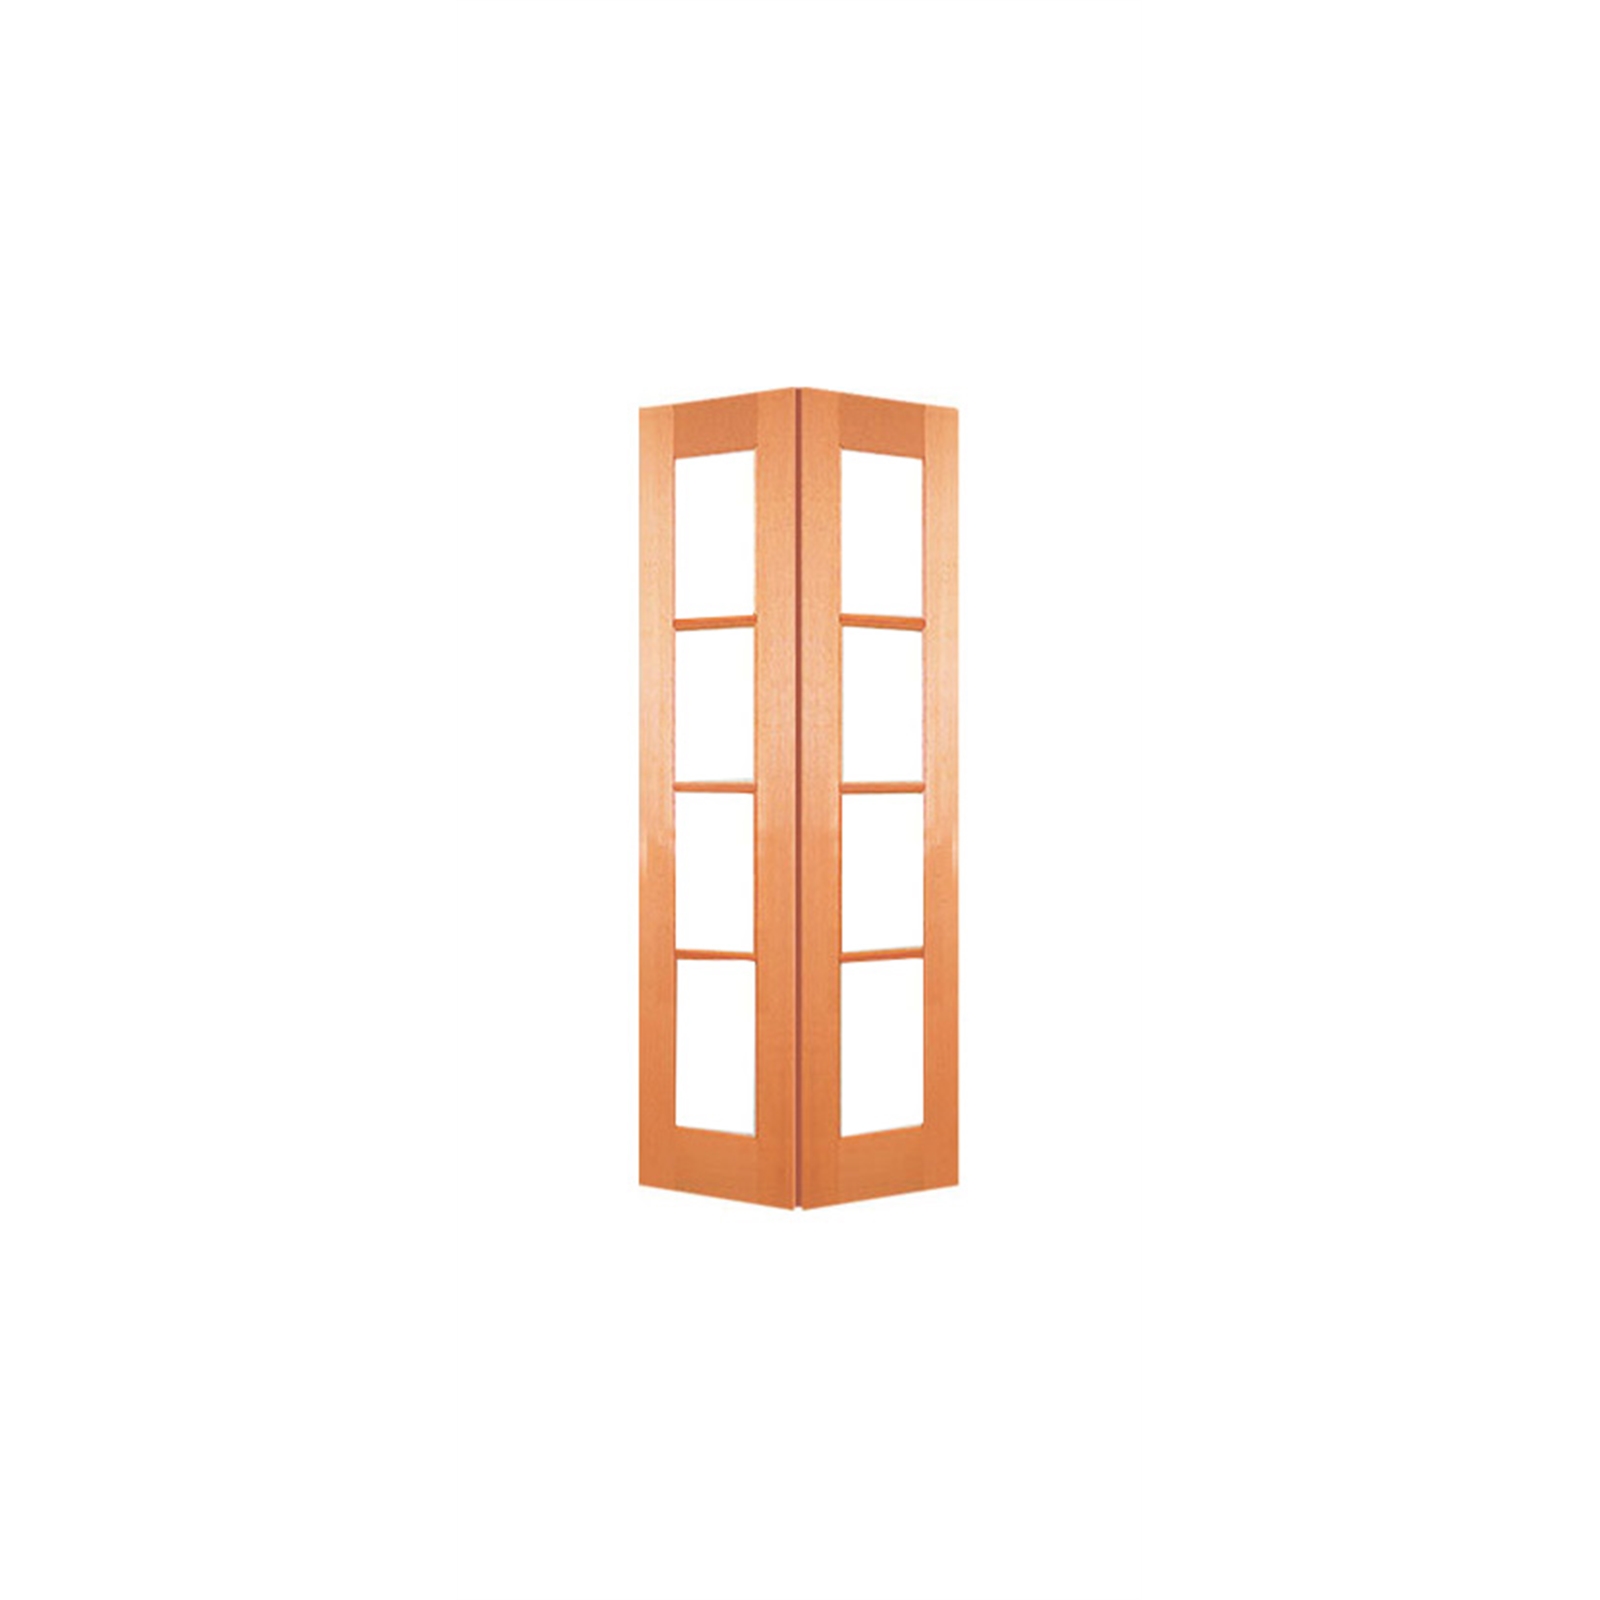 Woodcraft Doors 2040 x 820 x 35mm 4 Lite Clear Safety Glass Internal Bi-Fold Door